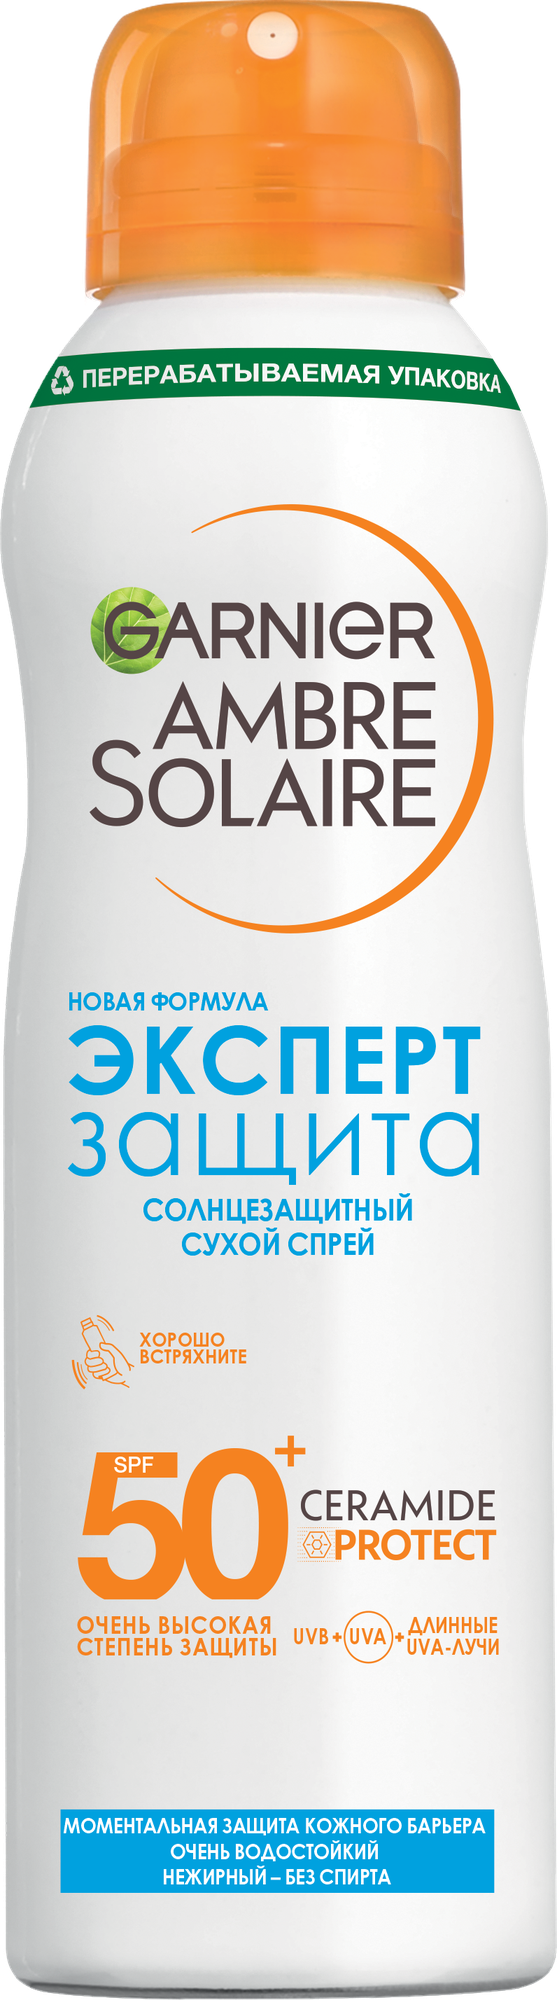 GARNIER Ambre Solaire солнцезащитный сухой спрей для тела Эксперт Защита SPF 50 SPF 50, 150 мл